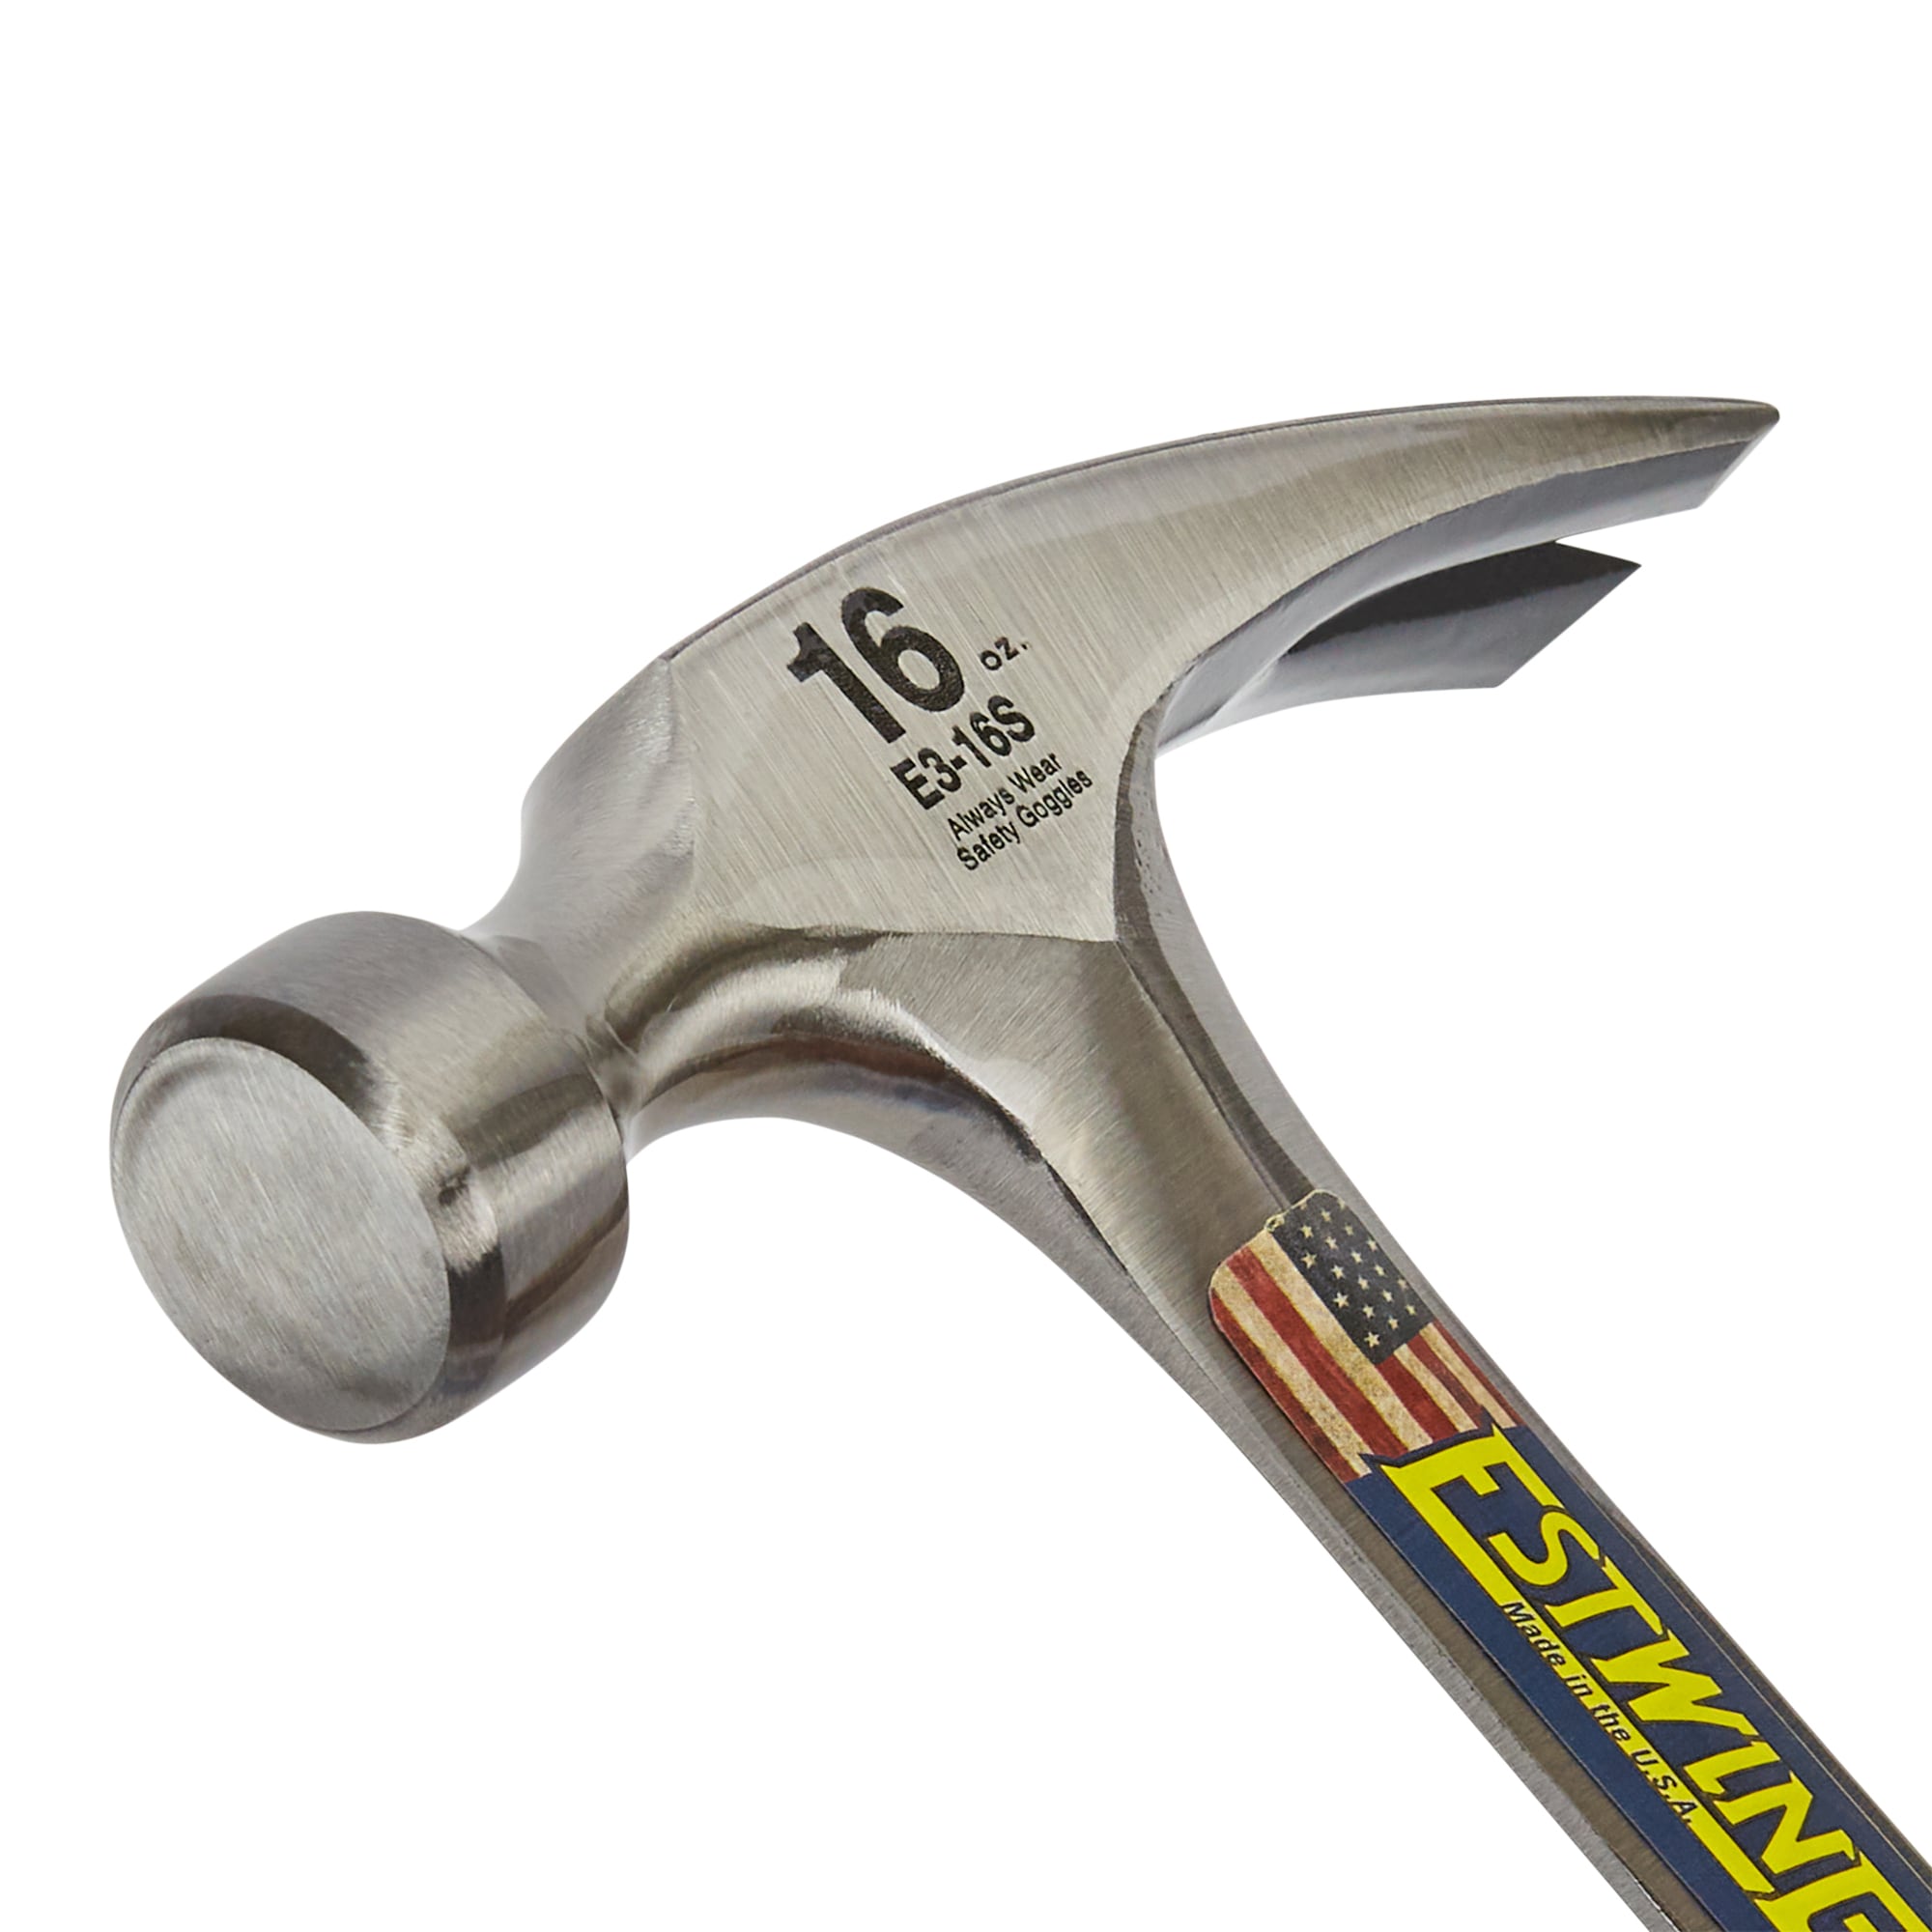 Estwing Klauen-Hammer 454 g (E3-16S) ab 46,51 €